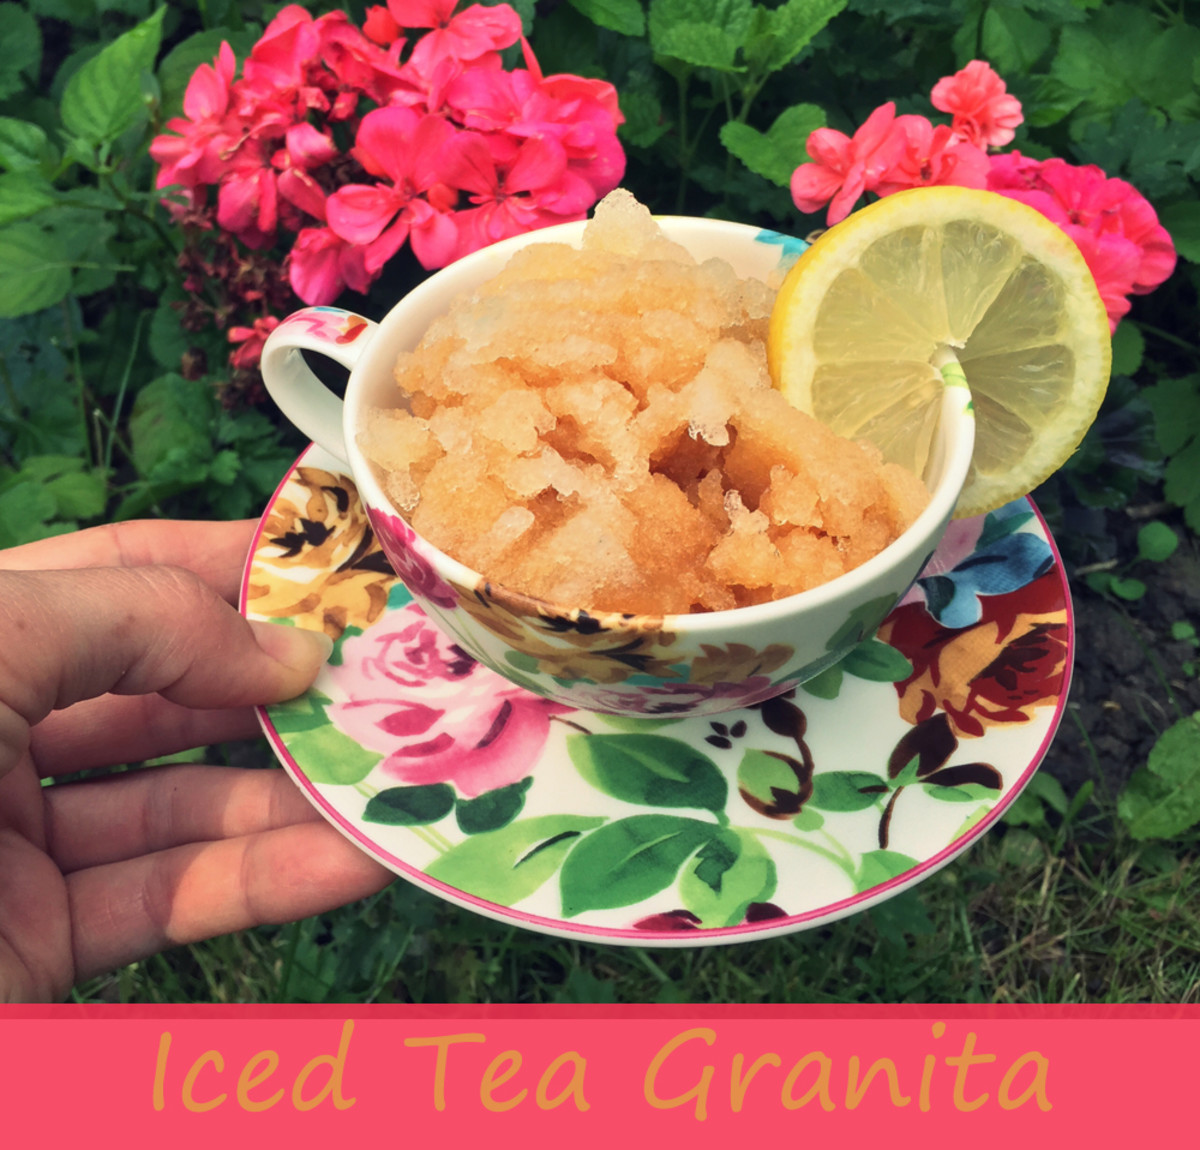 Iced Tea Granita